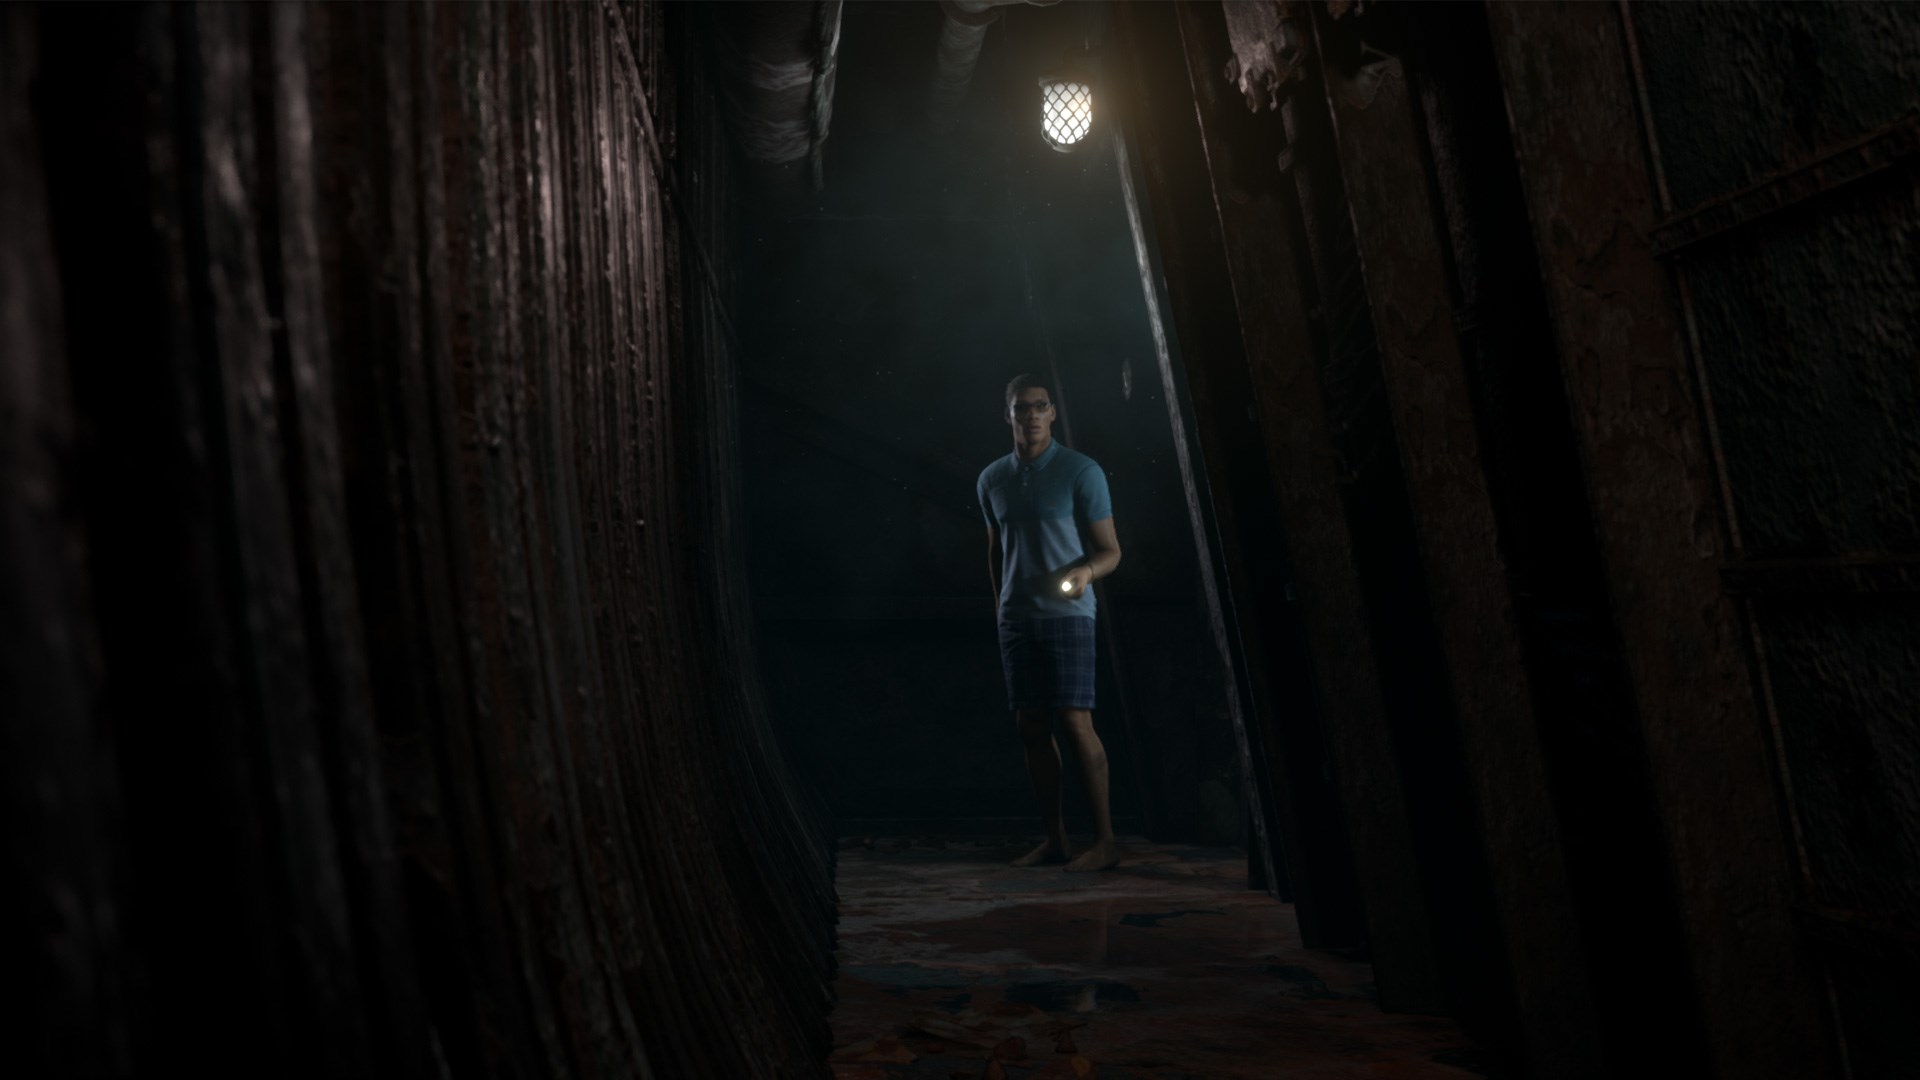 PS4 özel oyunu Until Dawn'ın geliştiricisi gizemli bir oyun üzerinde çalışıyor